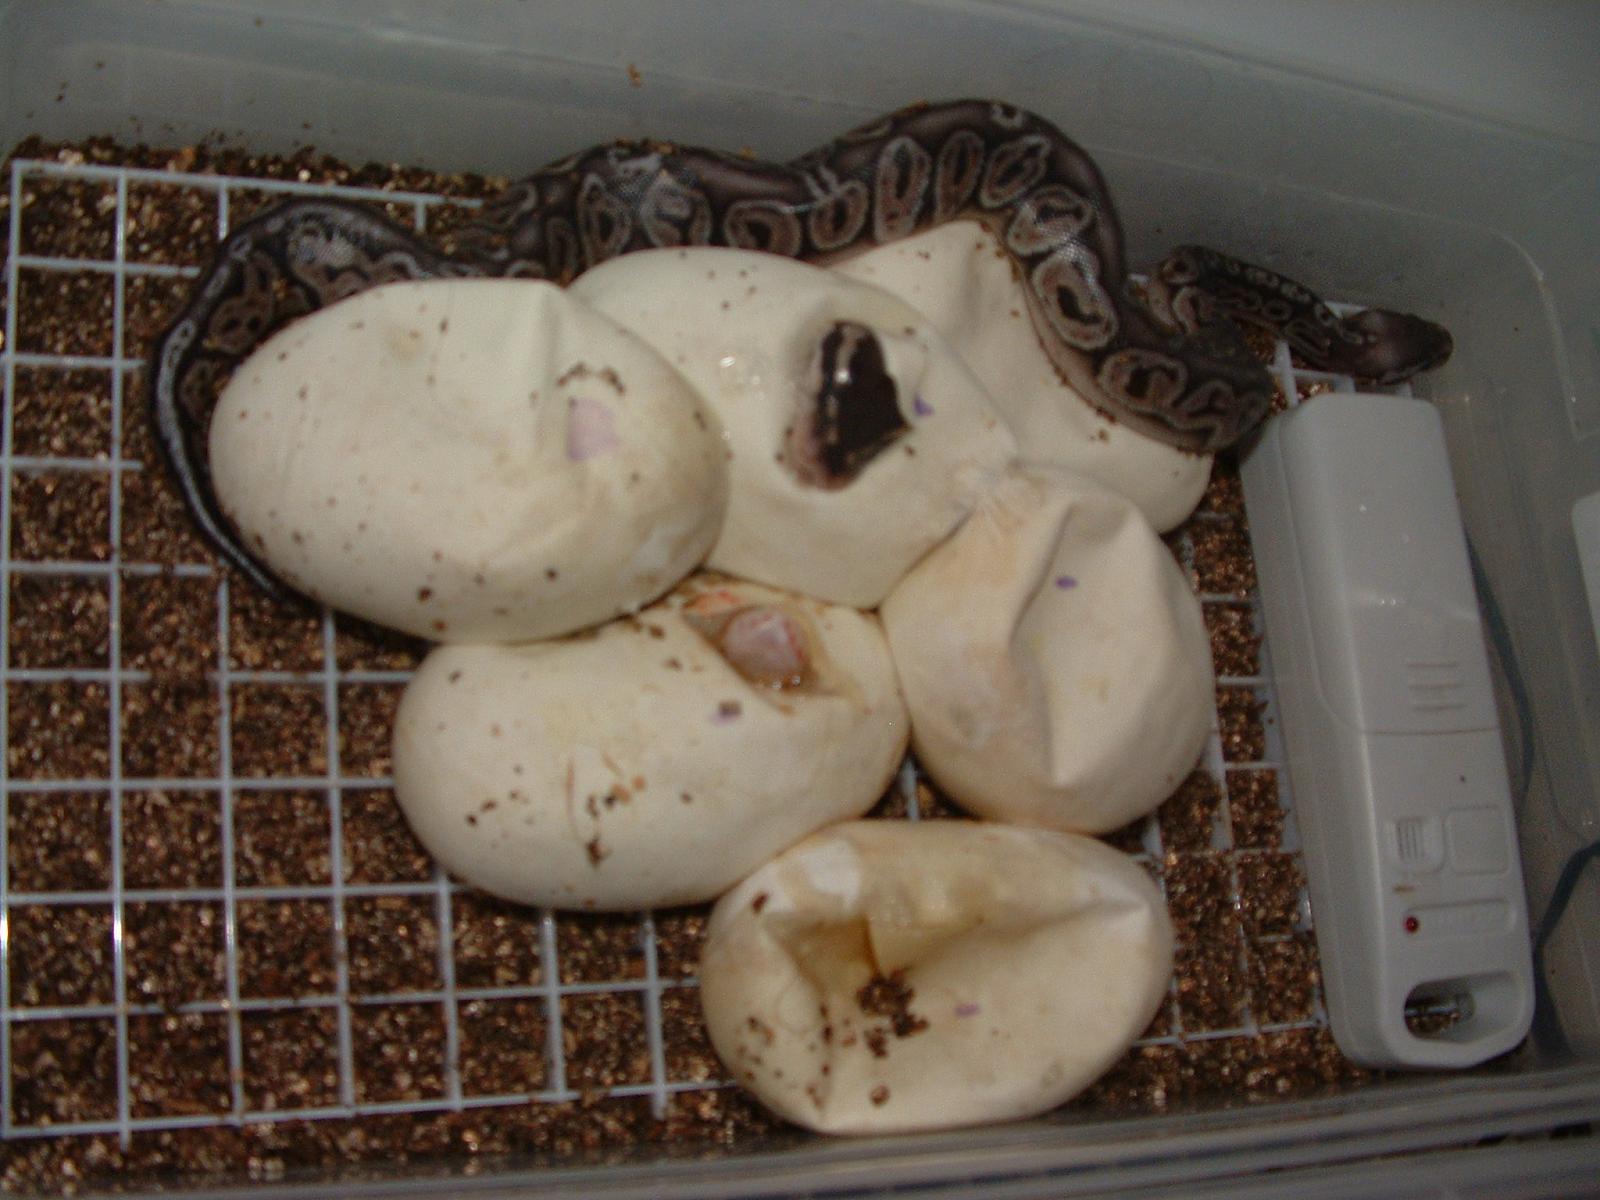 2012 Clutch 1 - Hatching #1